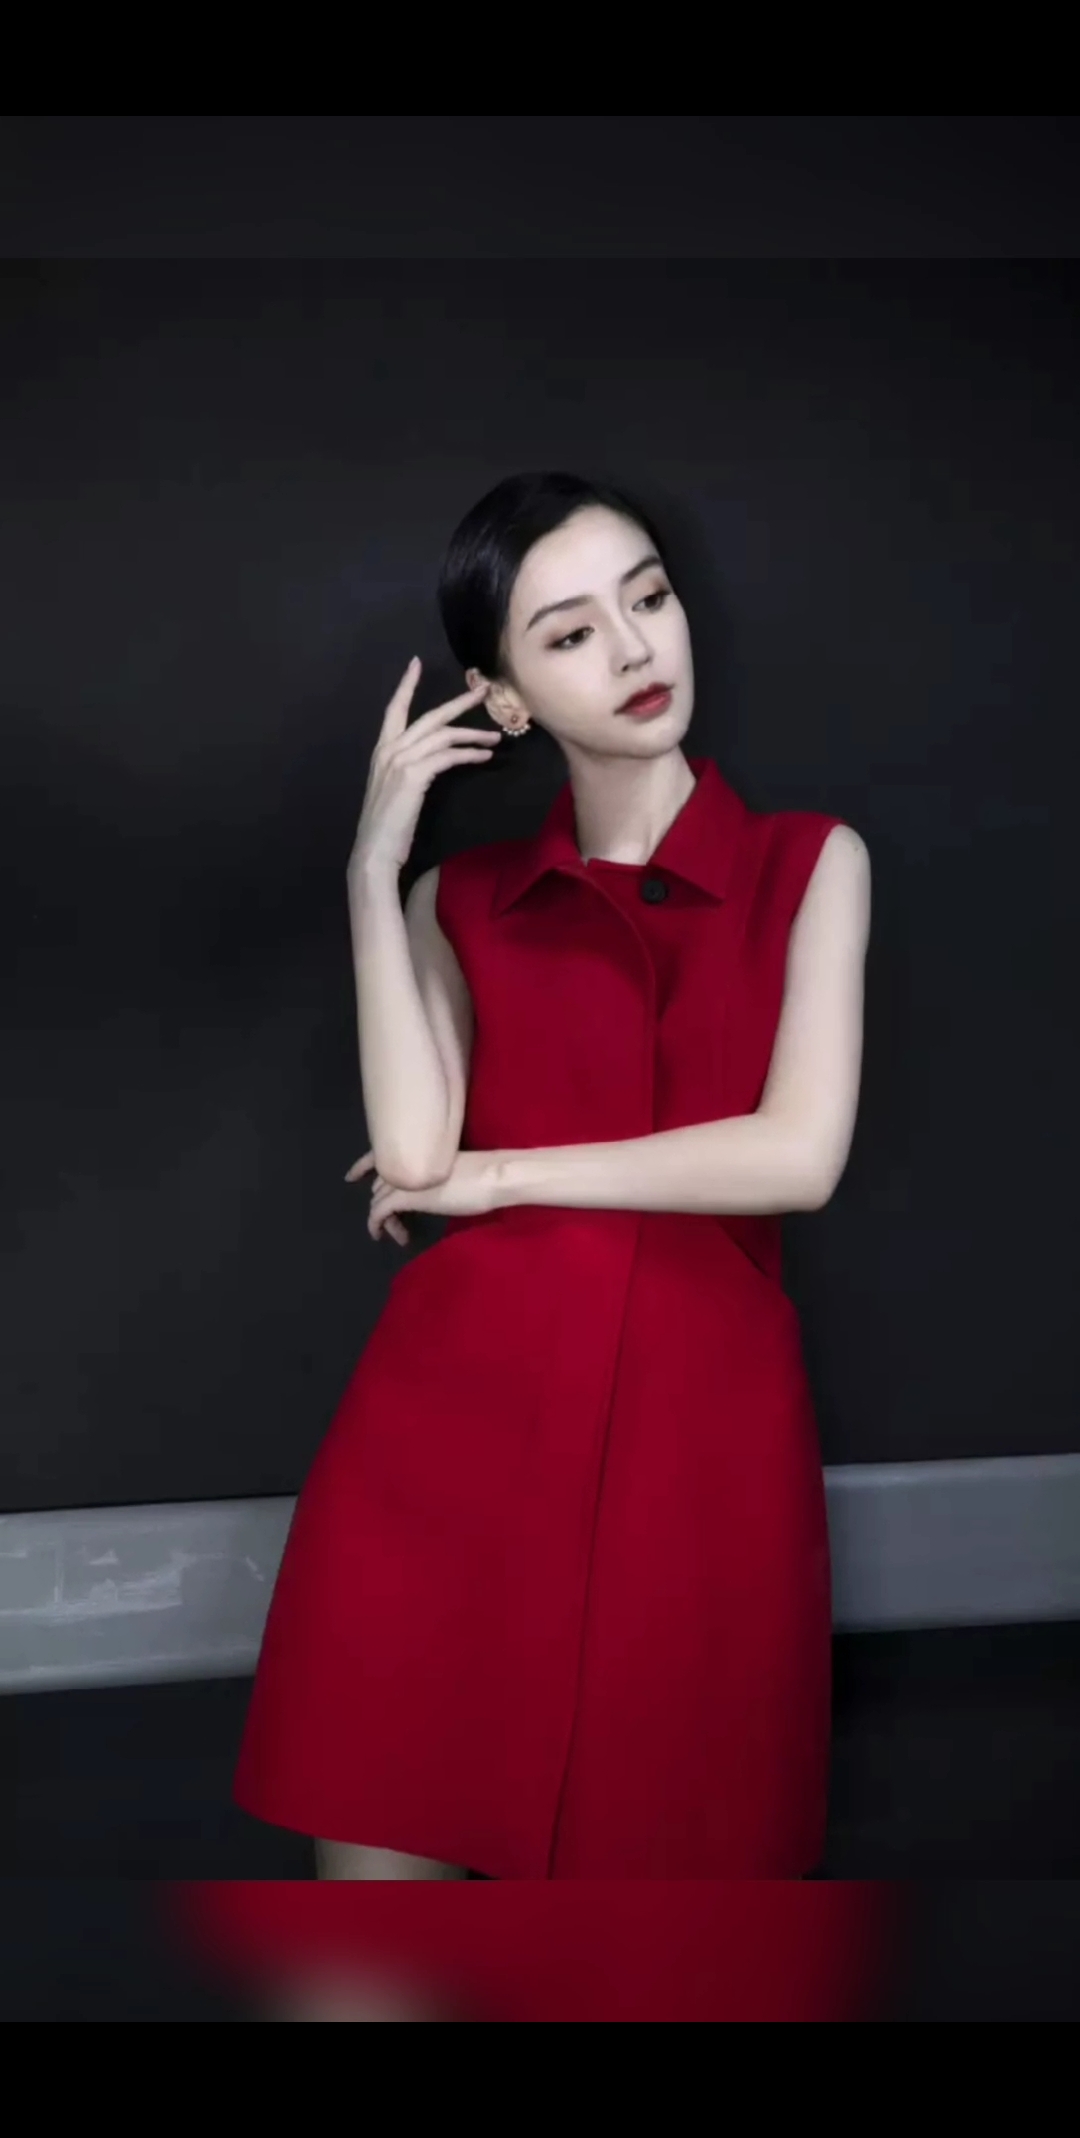 杨颖一身红色连衣裙惊艳亮相,美的霸气